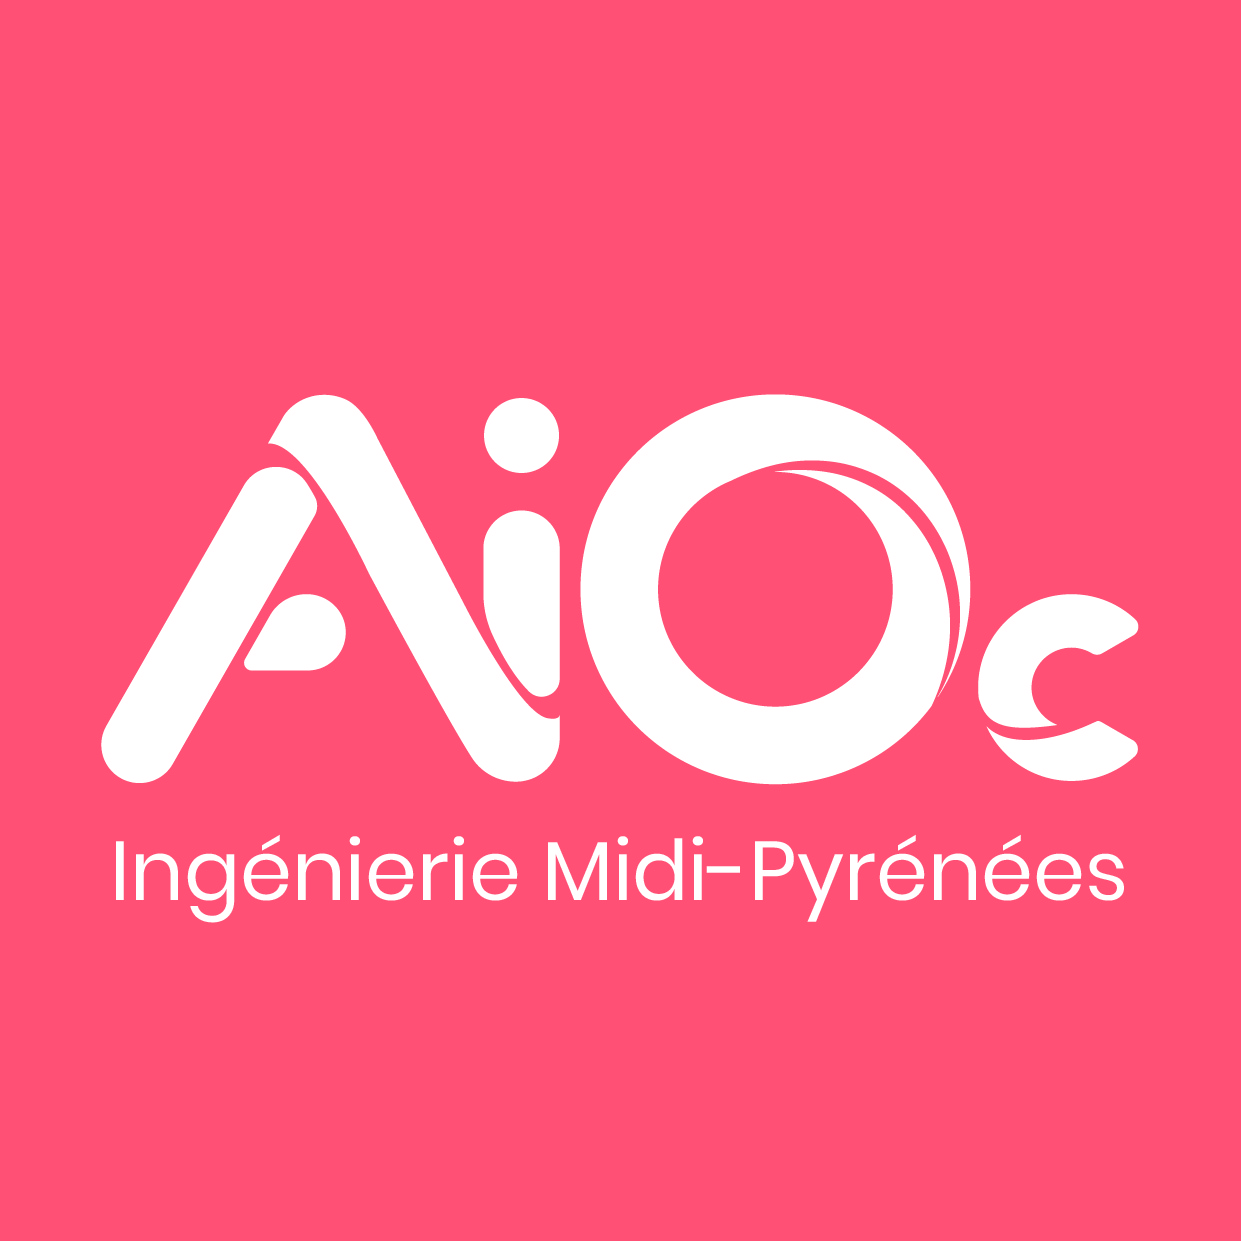 AiOc association ingénierie occitanie